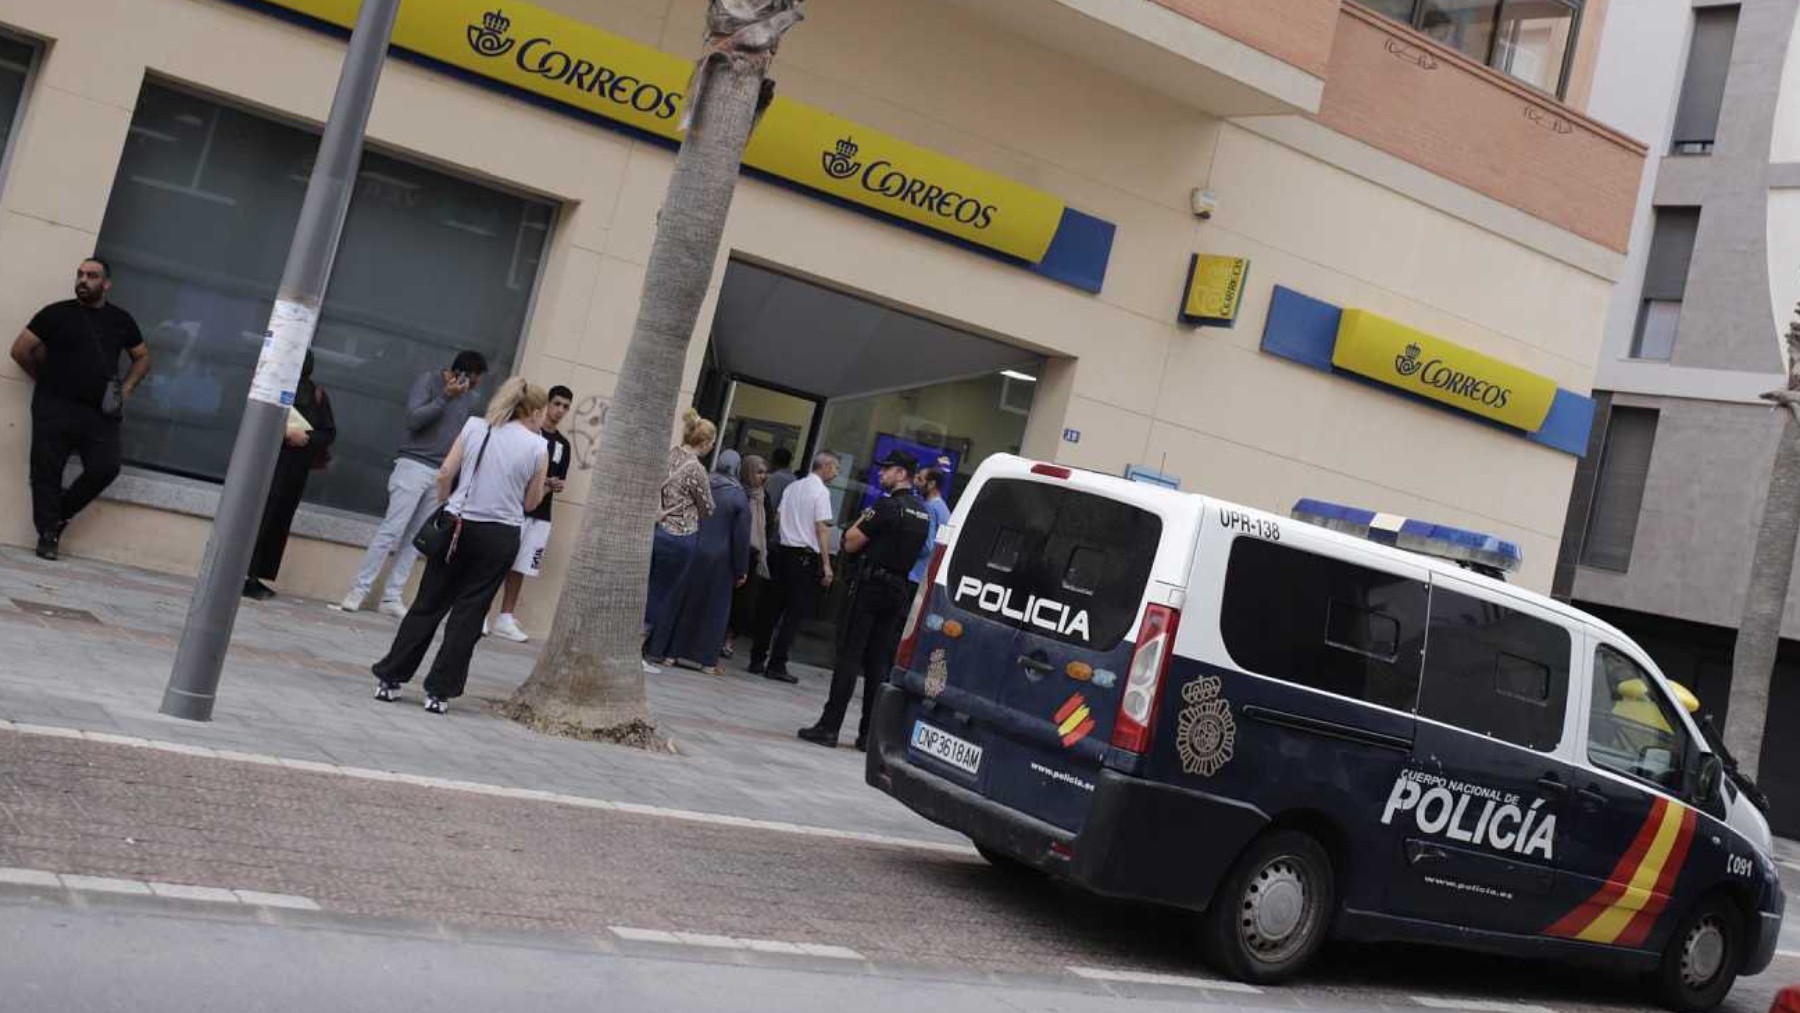 Policía escoltando una oficina de Correos en Melilla